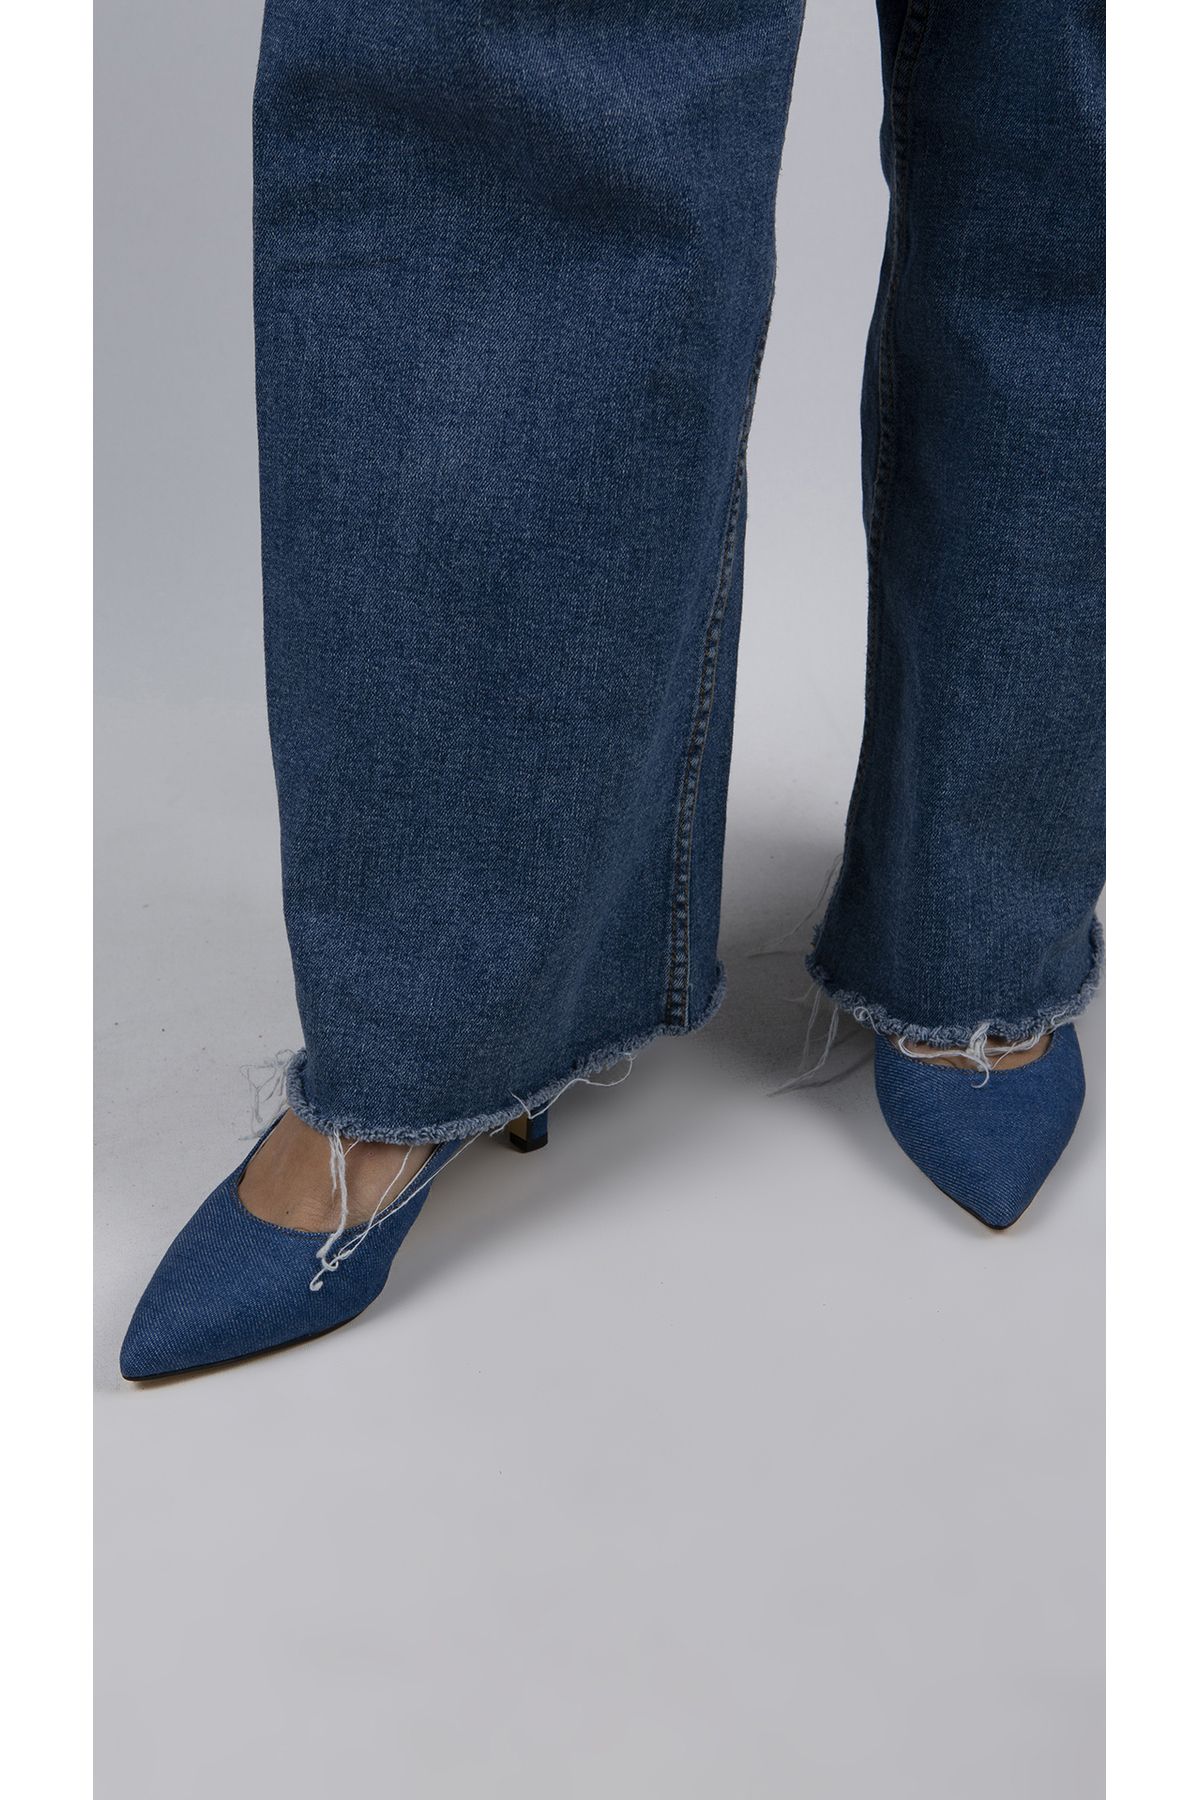 siya Jeany Kot Kumaştan Denim Kadın Mavi Topuklu Ayakkabı